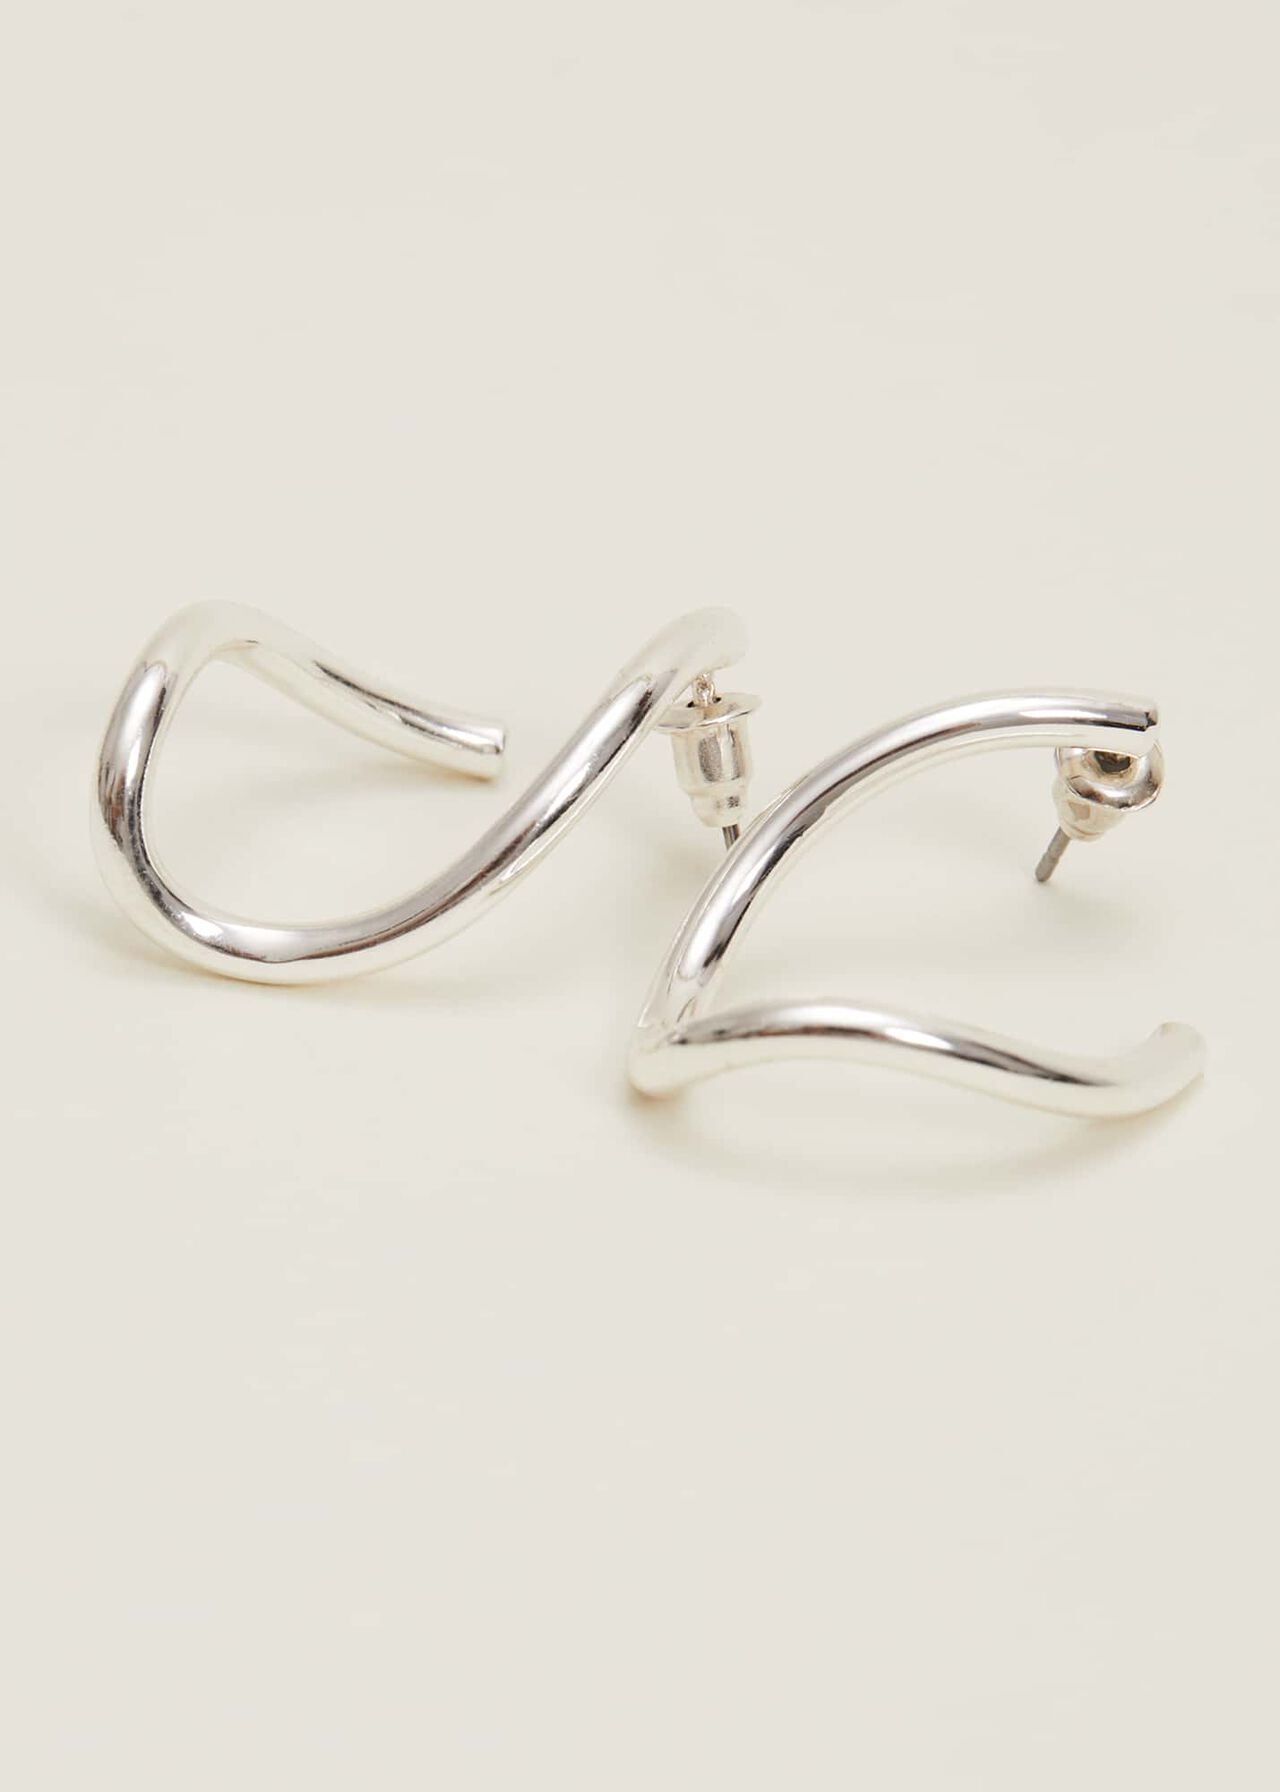 Large Silver Twist Drop Earrings